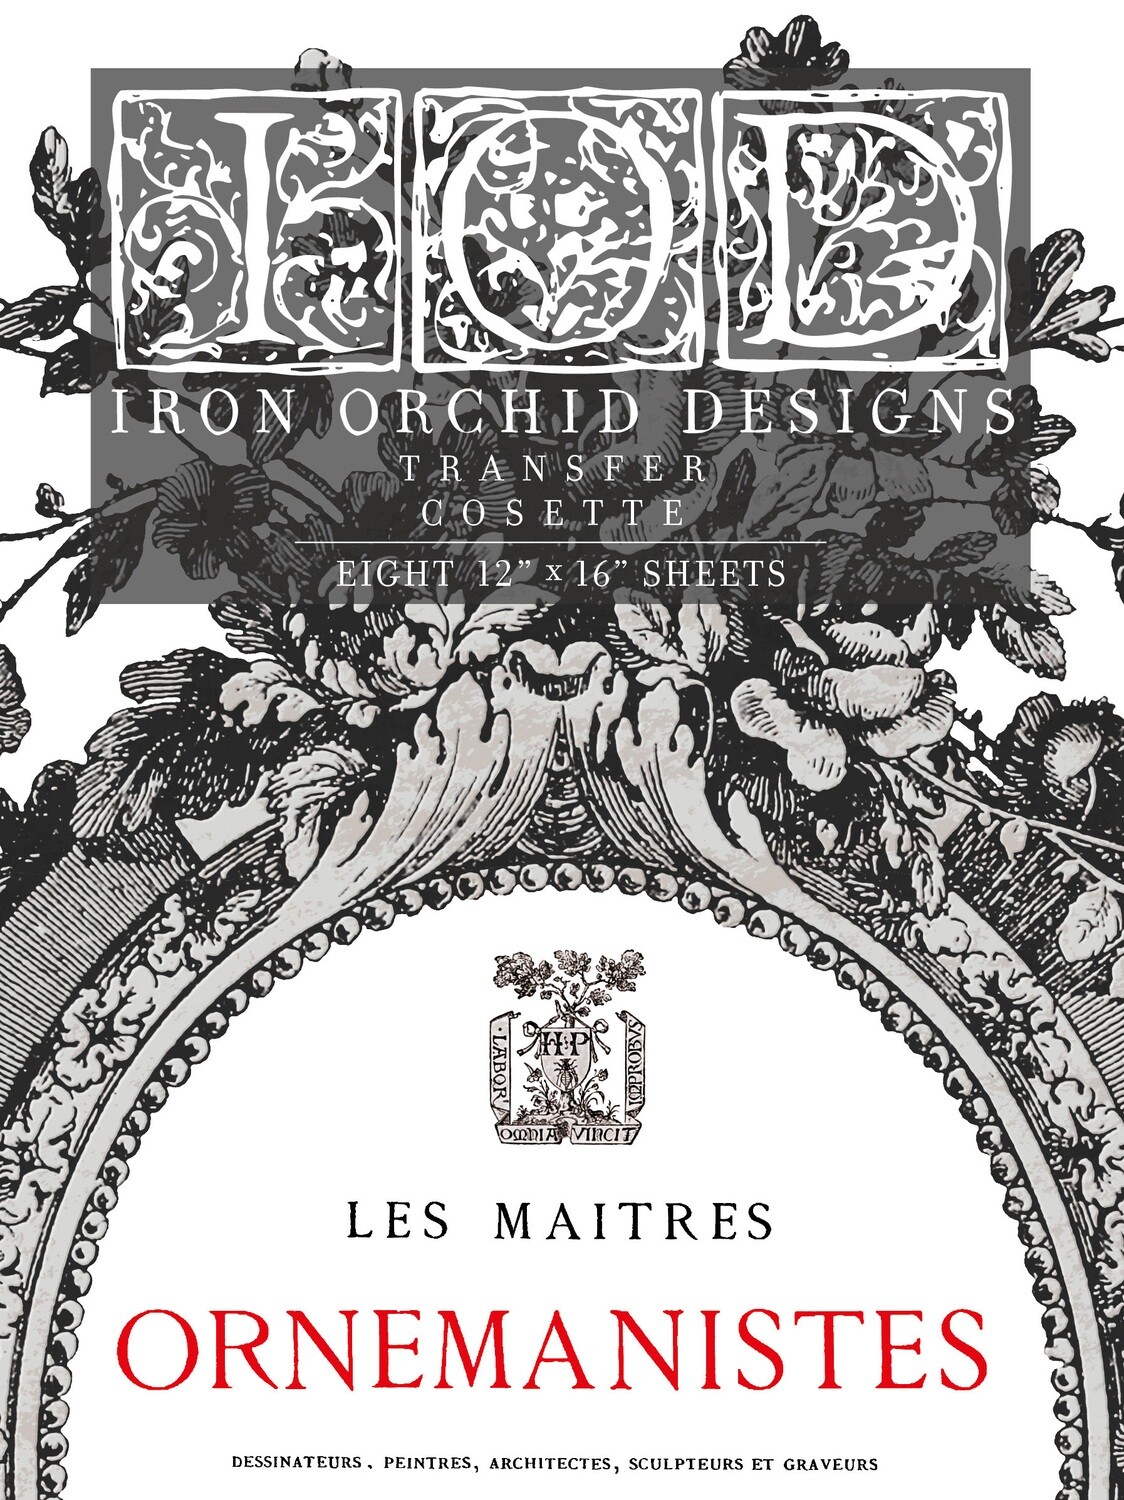 IOD COSETTE DECOR TRANSFER - Iron Orchid Designs